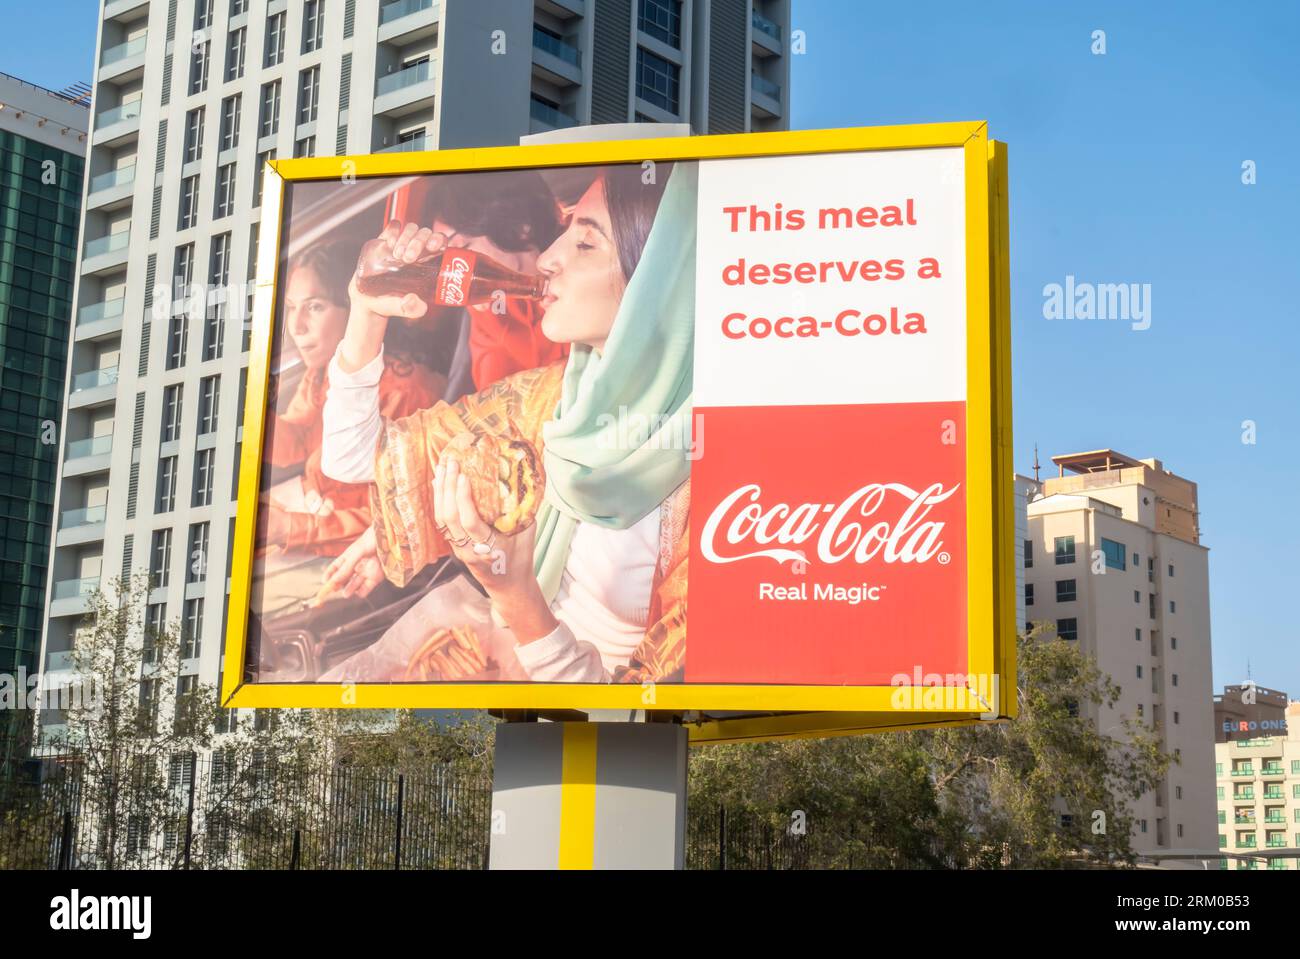 Coca-Cola Real magie mur extérieur publicité publicité publicité campagne sur la route à Manama Bahreïn. Femme arabe buvant de la publicité Coca-Cola Banque D'Images